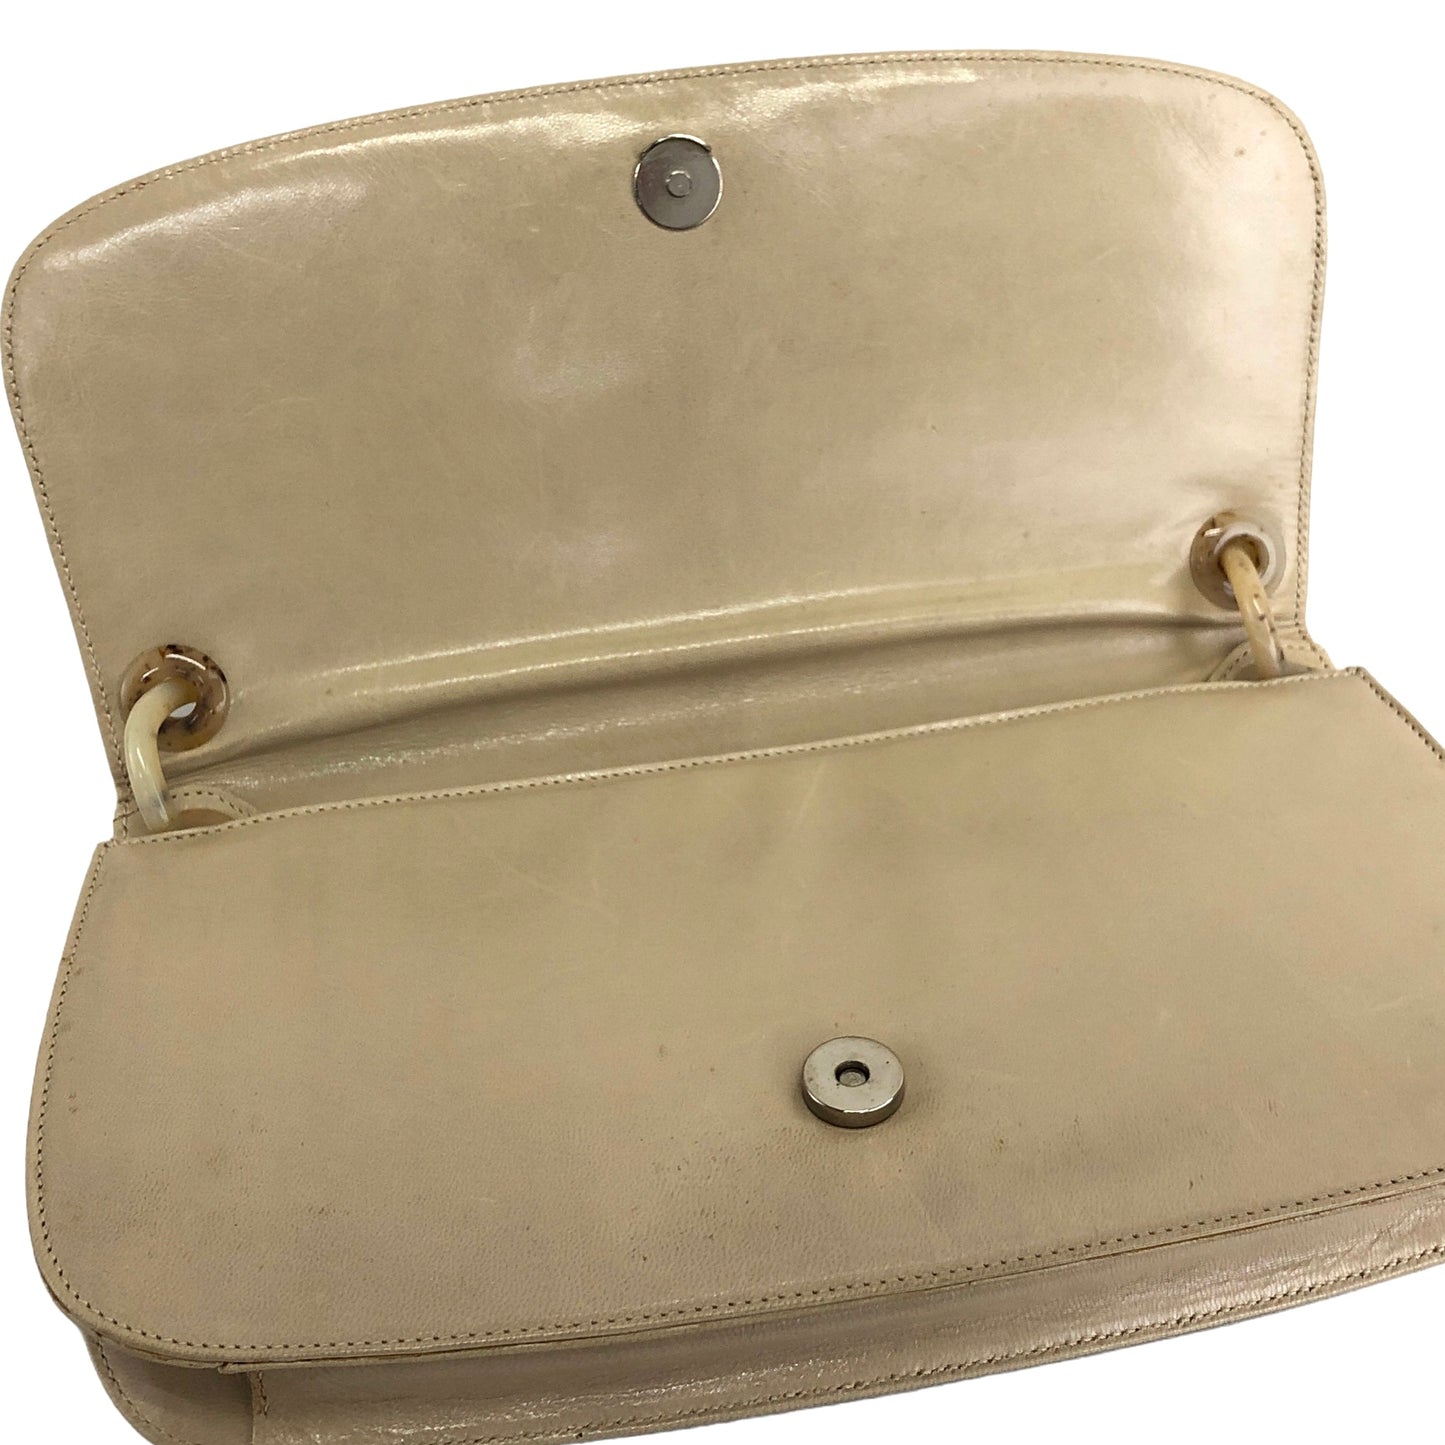 PRADA Leather Hobo bag Shoulder bag Handbag  Cream Vintage Old iw335a